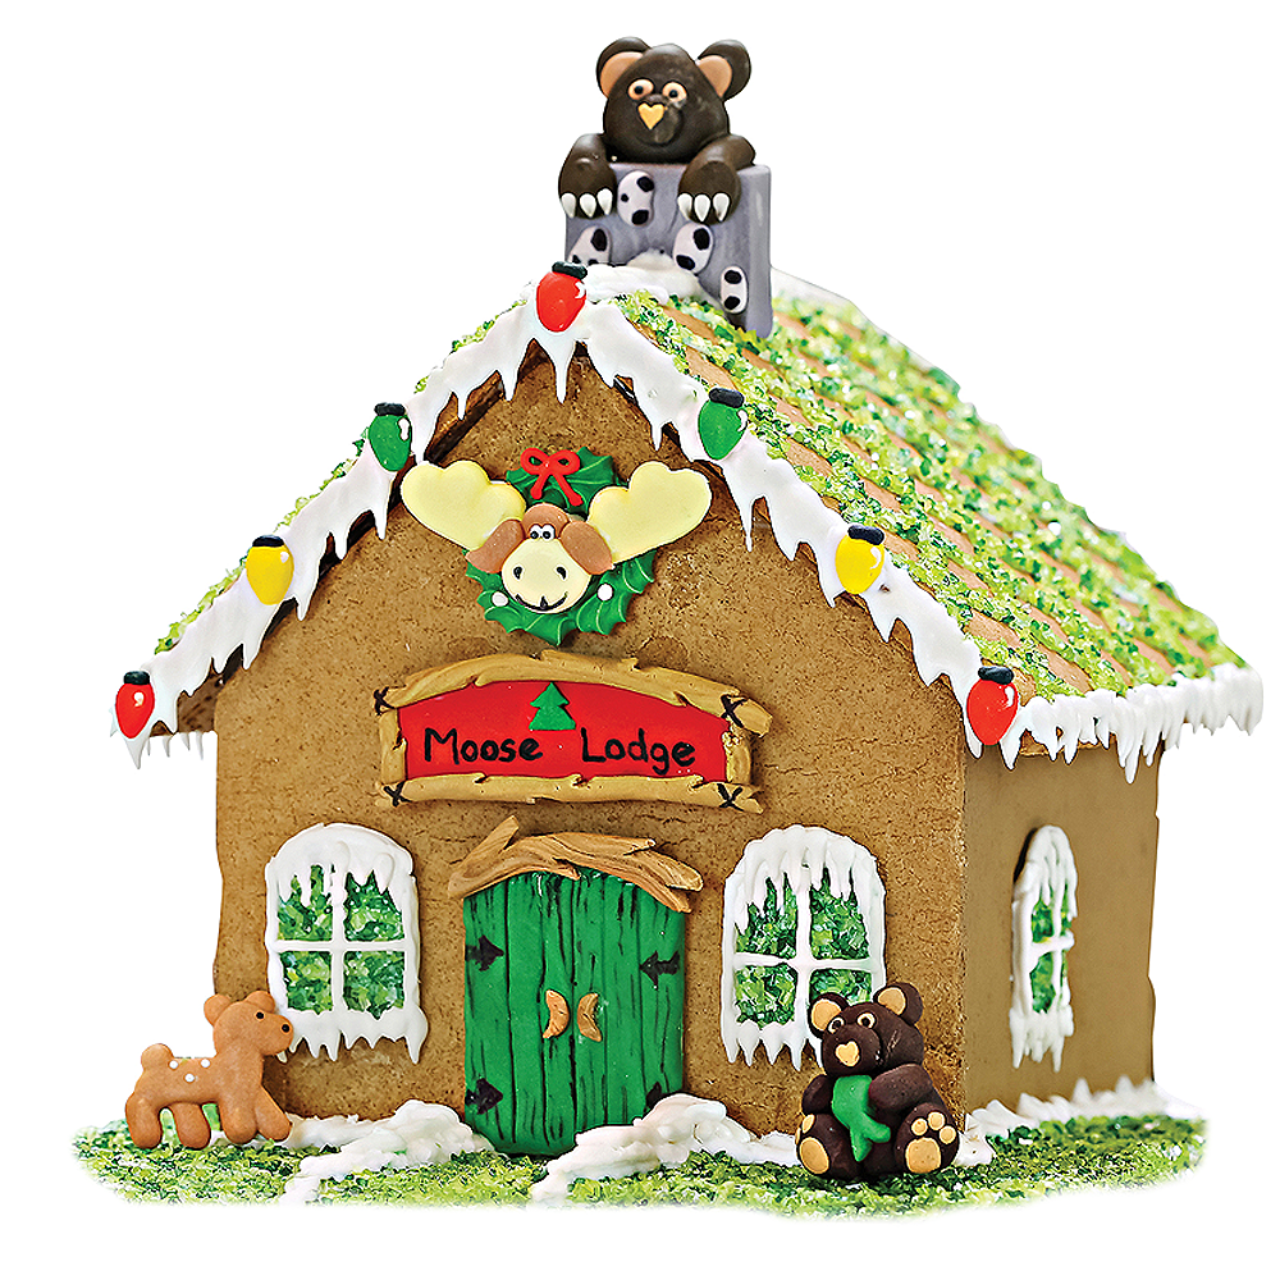 Moose Lodge Designer Gingerbread House